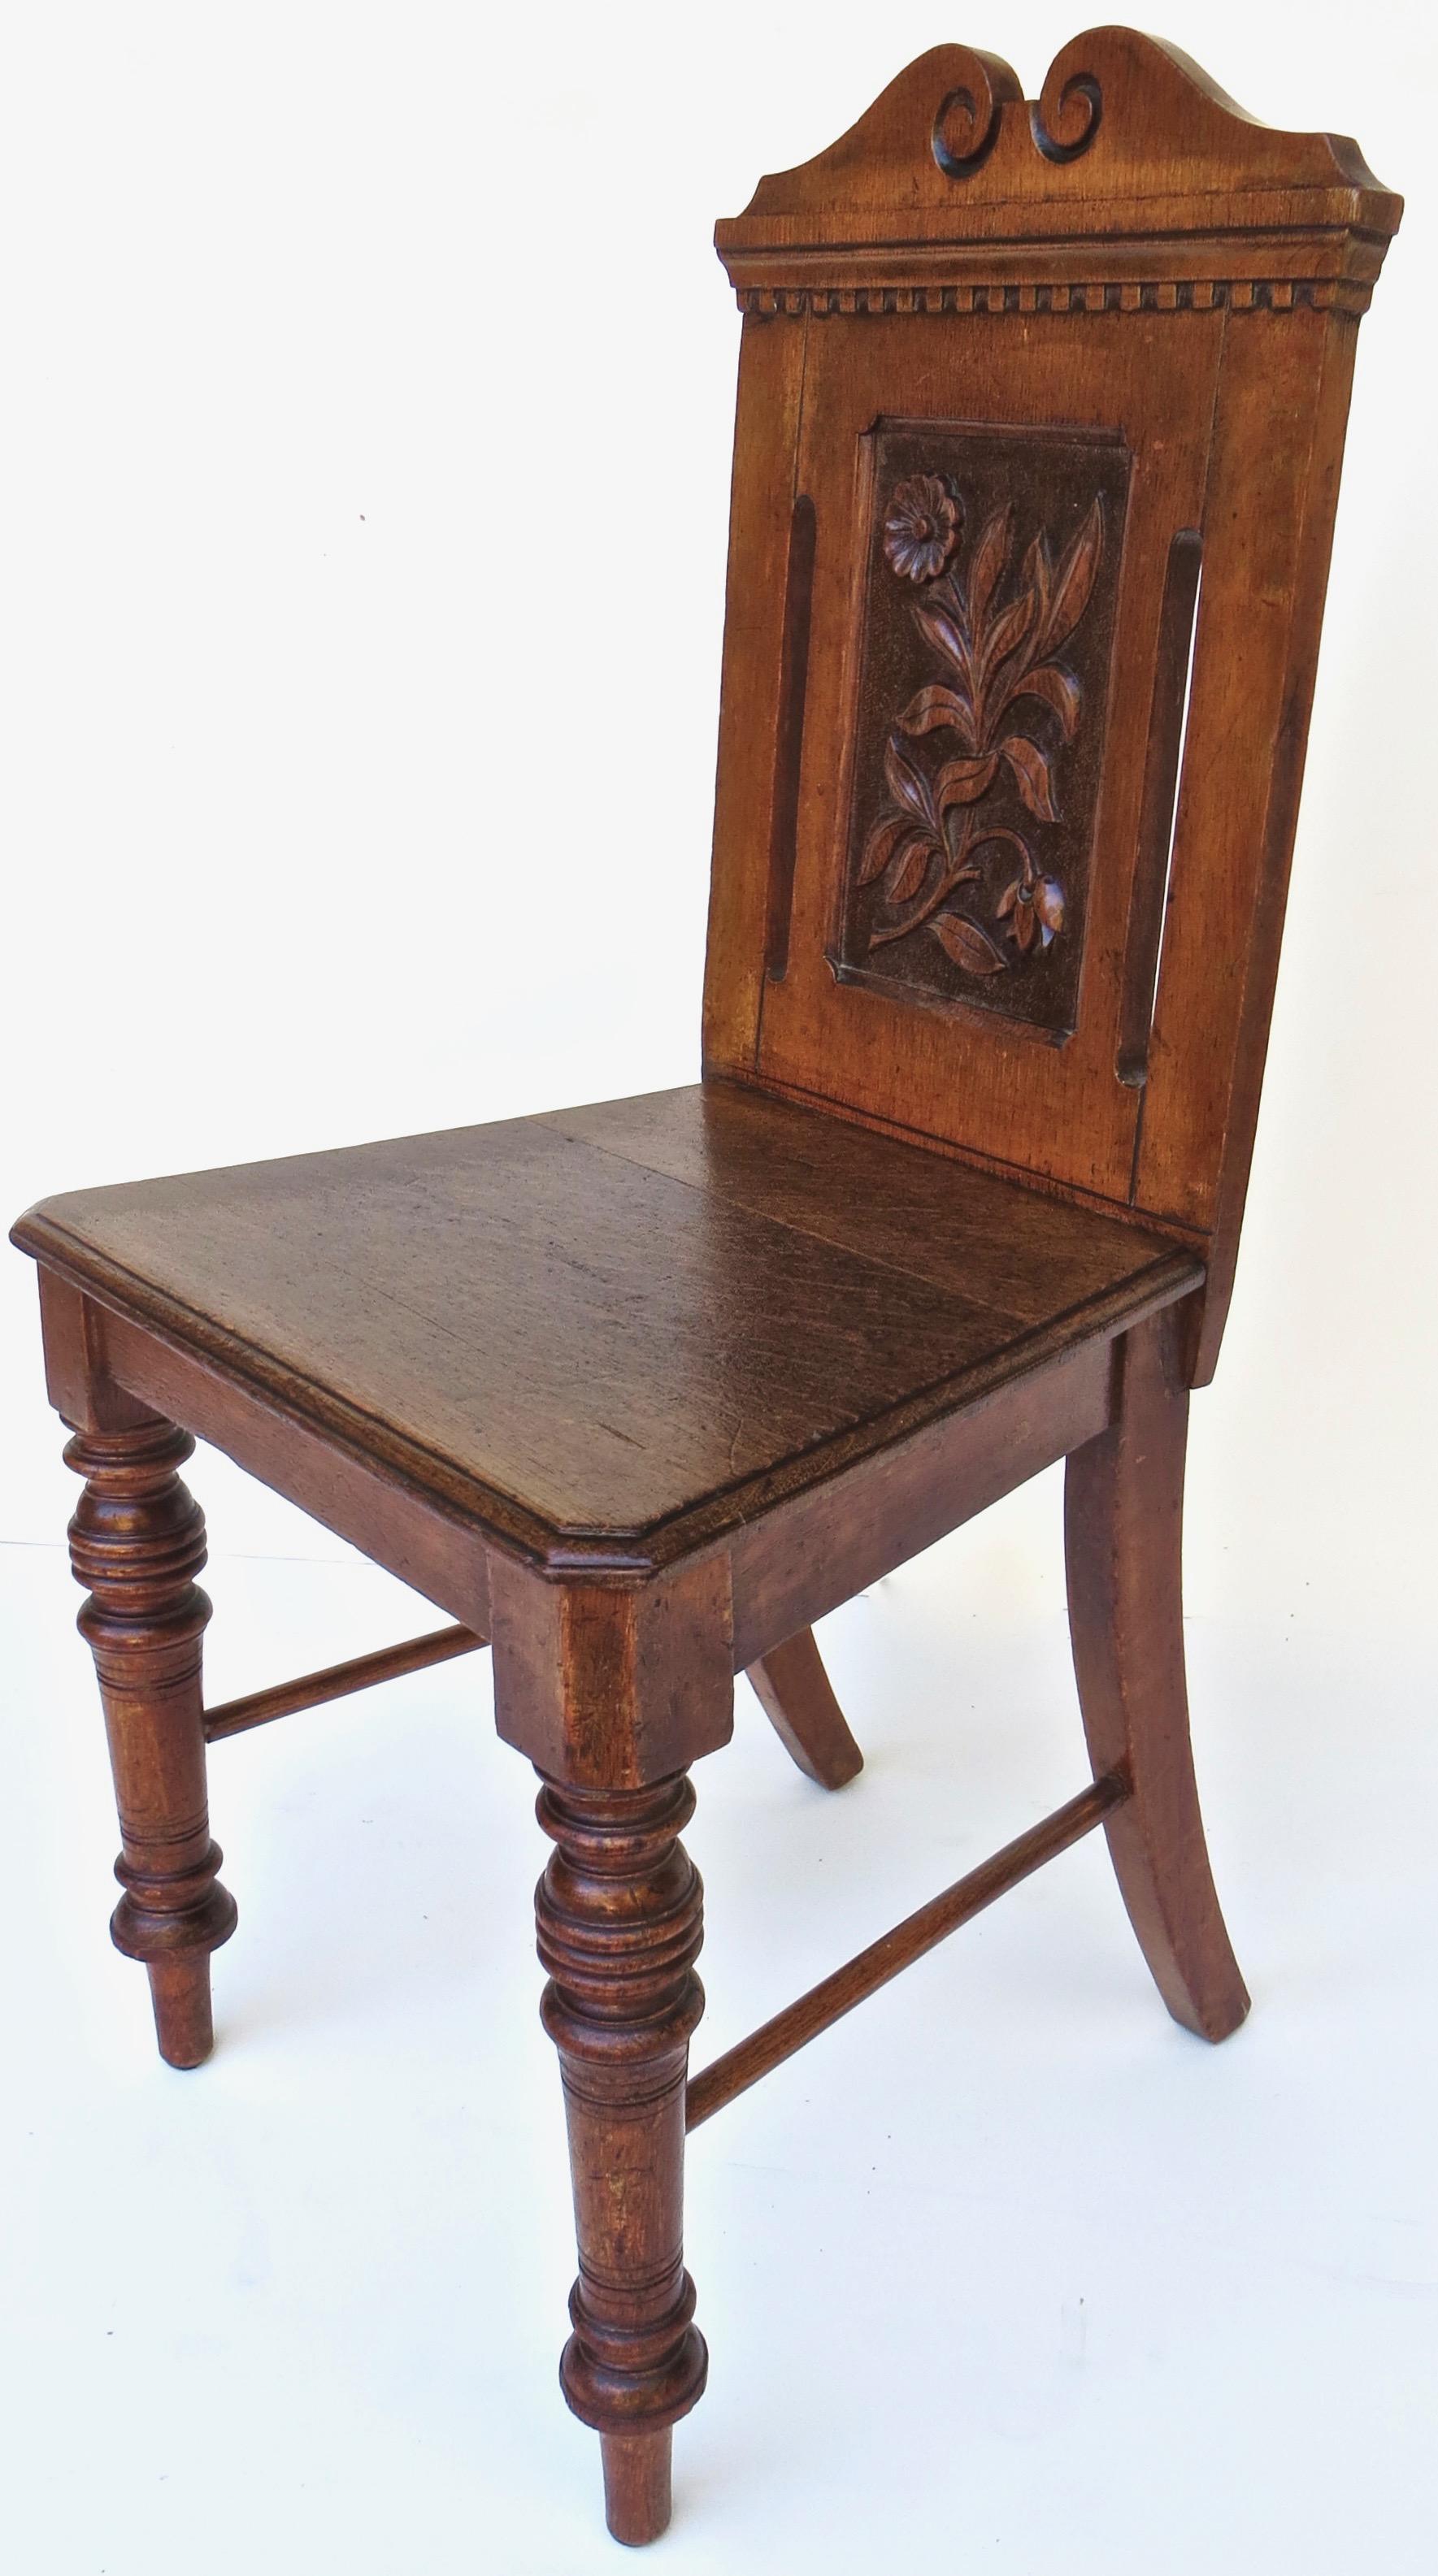 Chaise d'appoint anglaise de la fin du XIXe siècle, très unique, en chêne massif avec dossier sculpté de motifs floraux. Deux longues lattes verticales ouvertes (une de chaque côté du dossier) ajoutent au design unique de cette chaise victorienne.